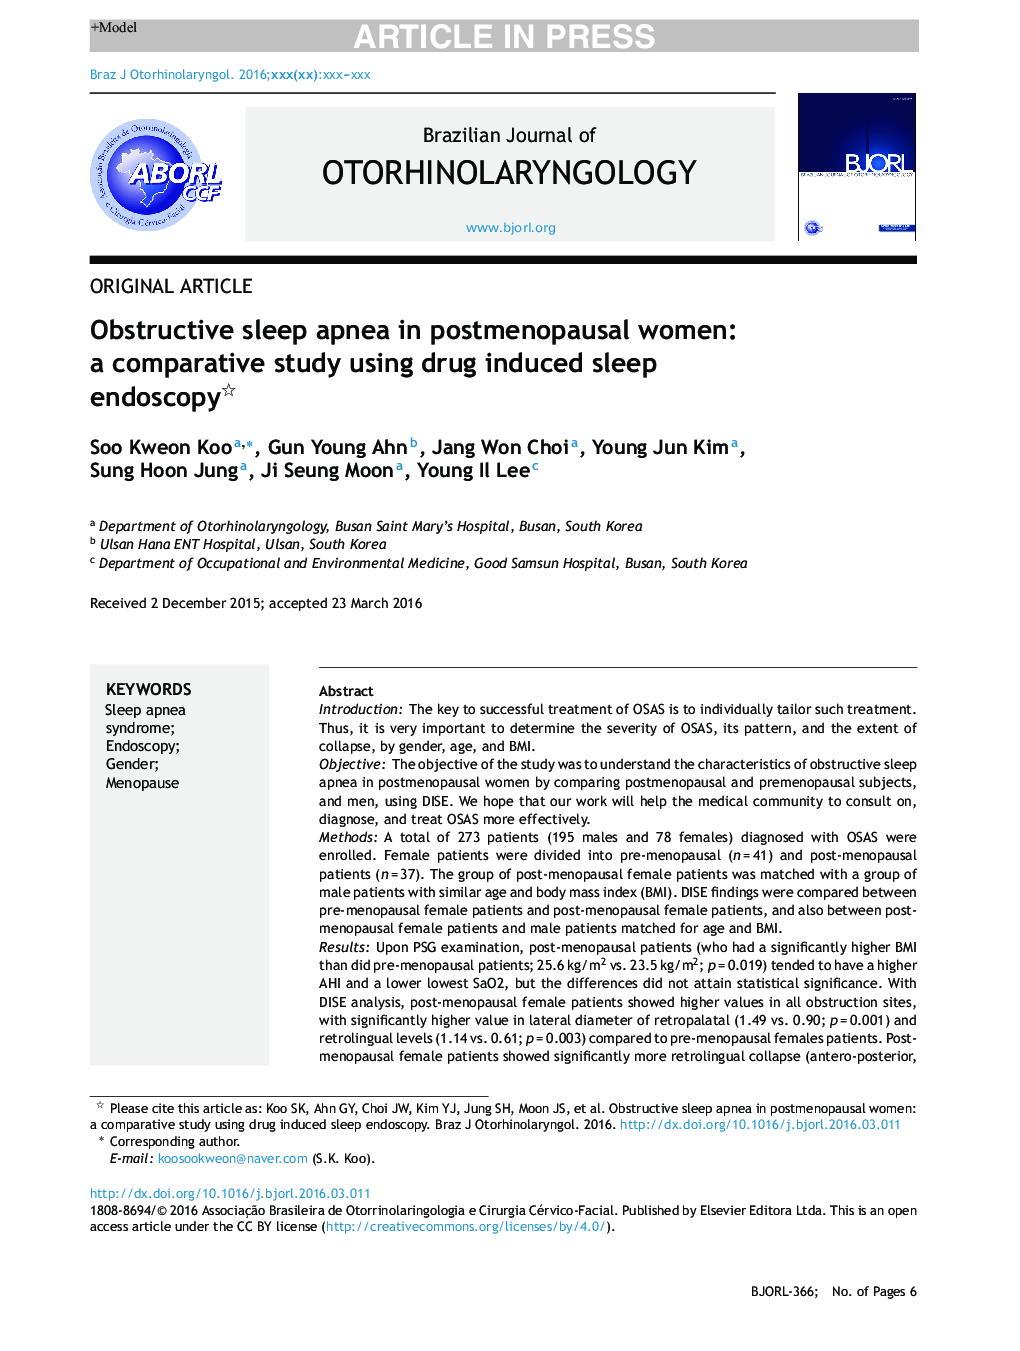 آپنه انسداد خواب در زنان یائسه: یک مطالعه تطبیقی ​​با استفاده از آندوسکوپی خواب مبتنی بر دارو است 